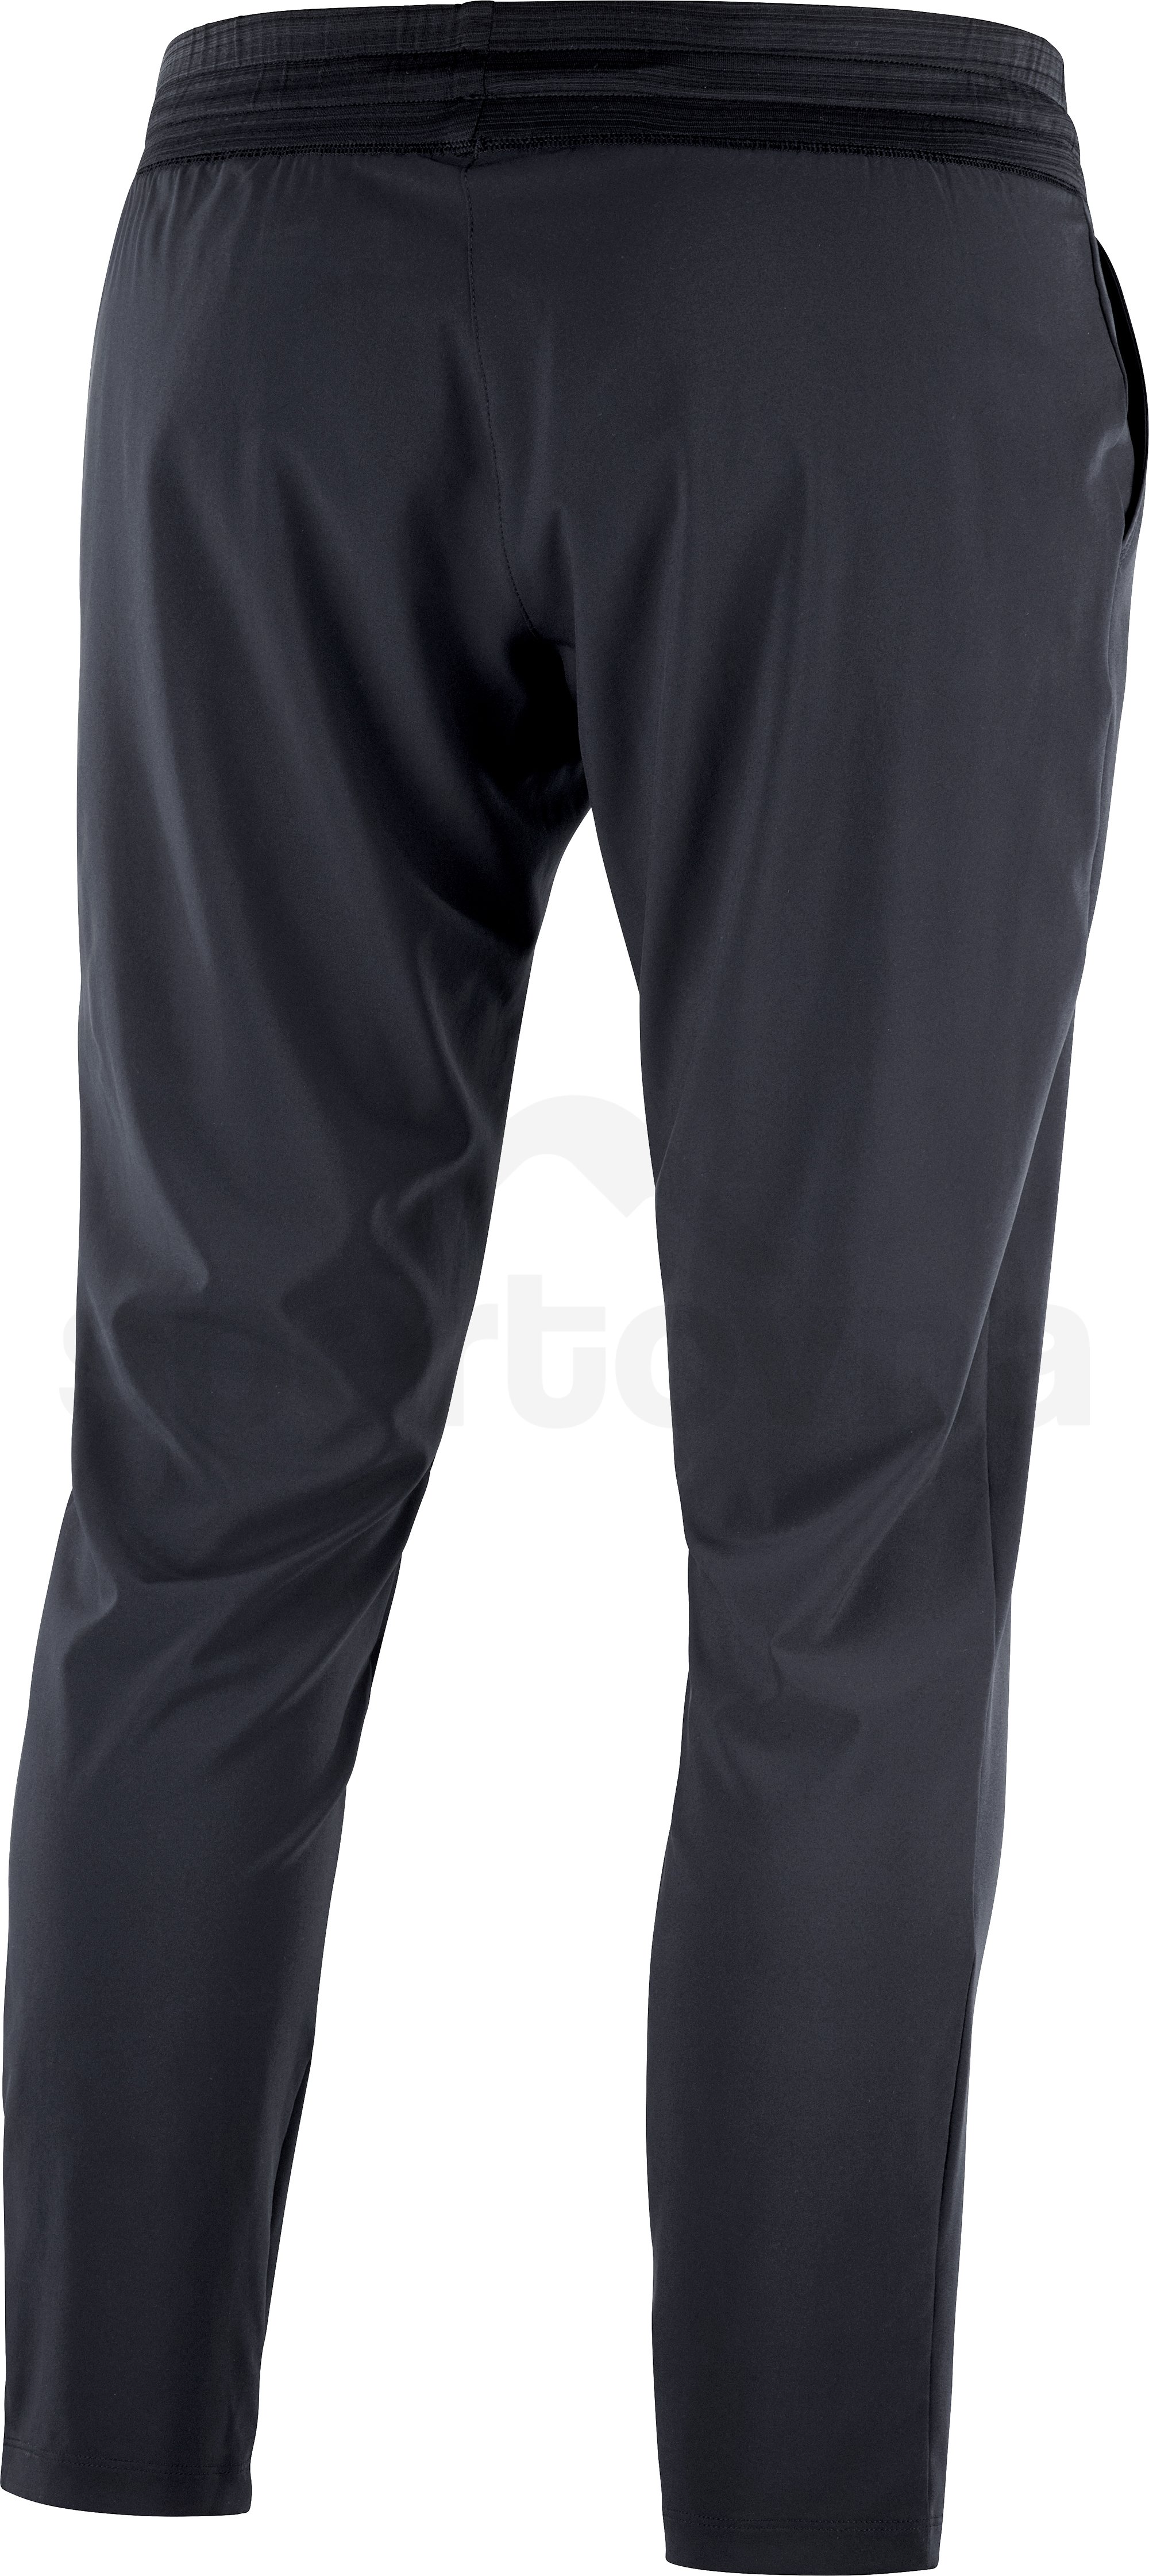 Kalhoty Salomon COMET PANT W - černá